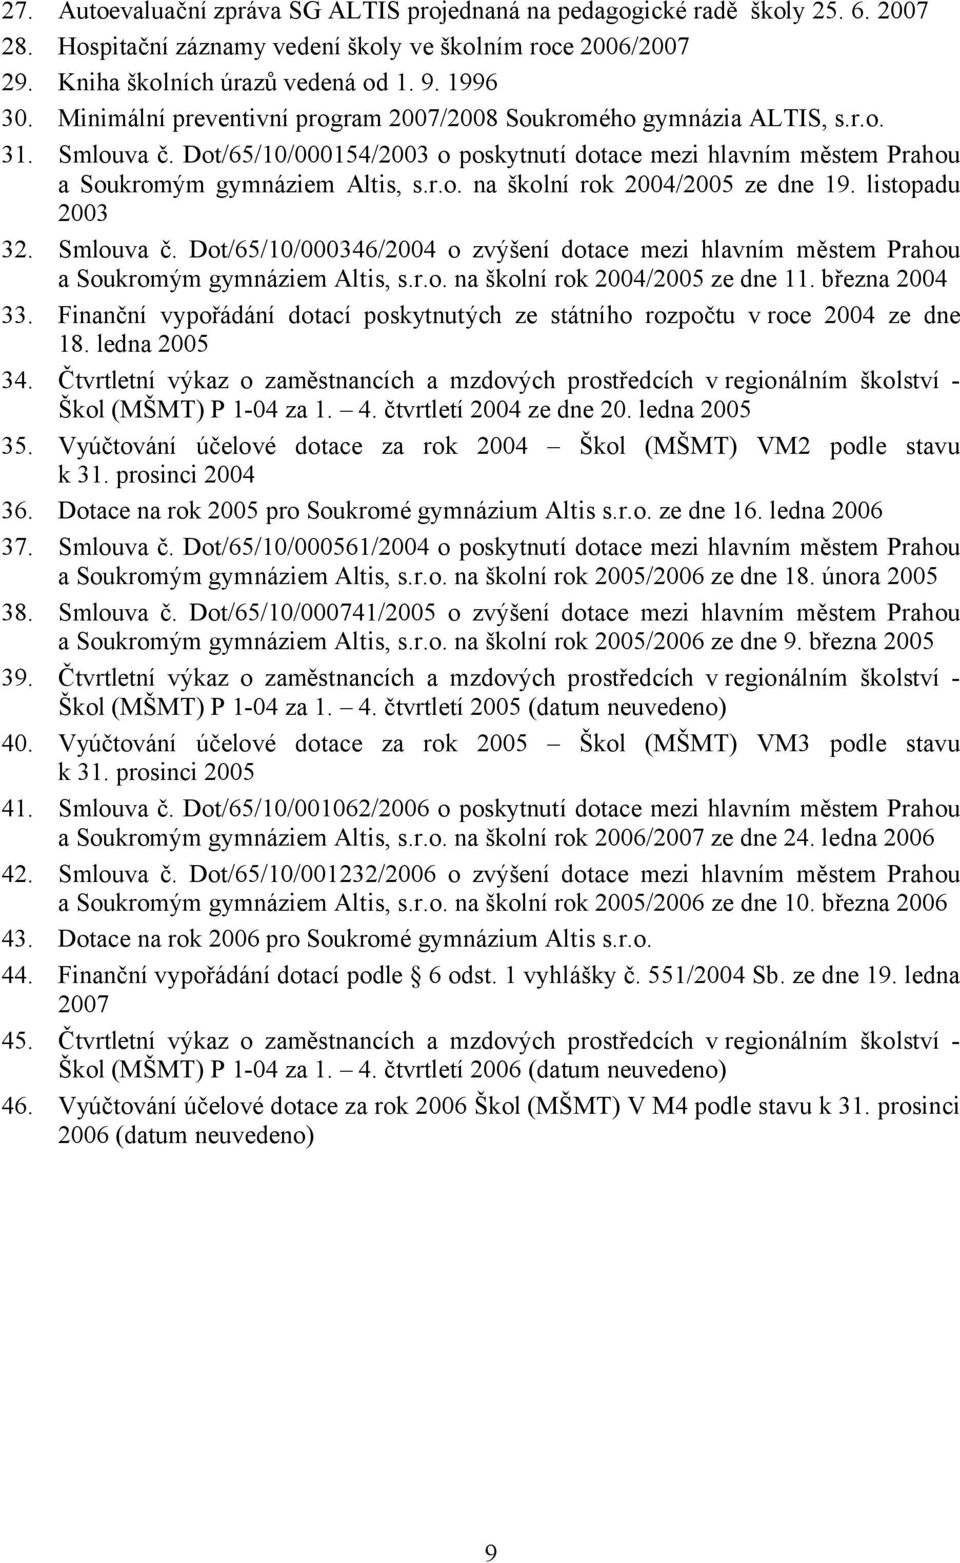 listopadu 2003 32. Smlouva č. Dot/65/10/000346/2004 o zvýšení dotace mezi hlavním městem Prahou a Soukromým gymnáziem Altis, s.r.o. na školní rok 2004/2005 ze dne 11. března 2004 33.